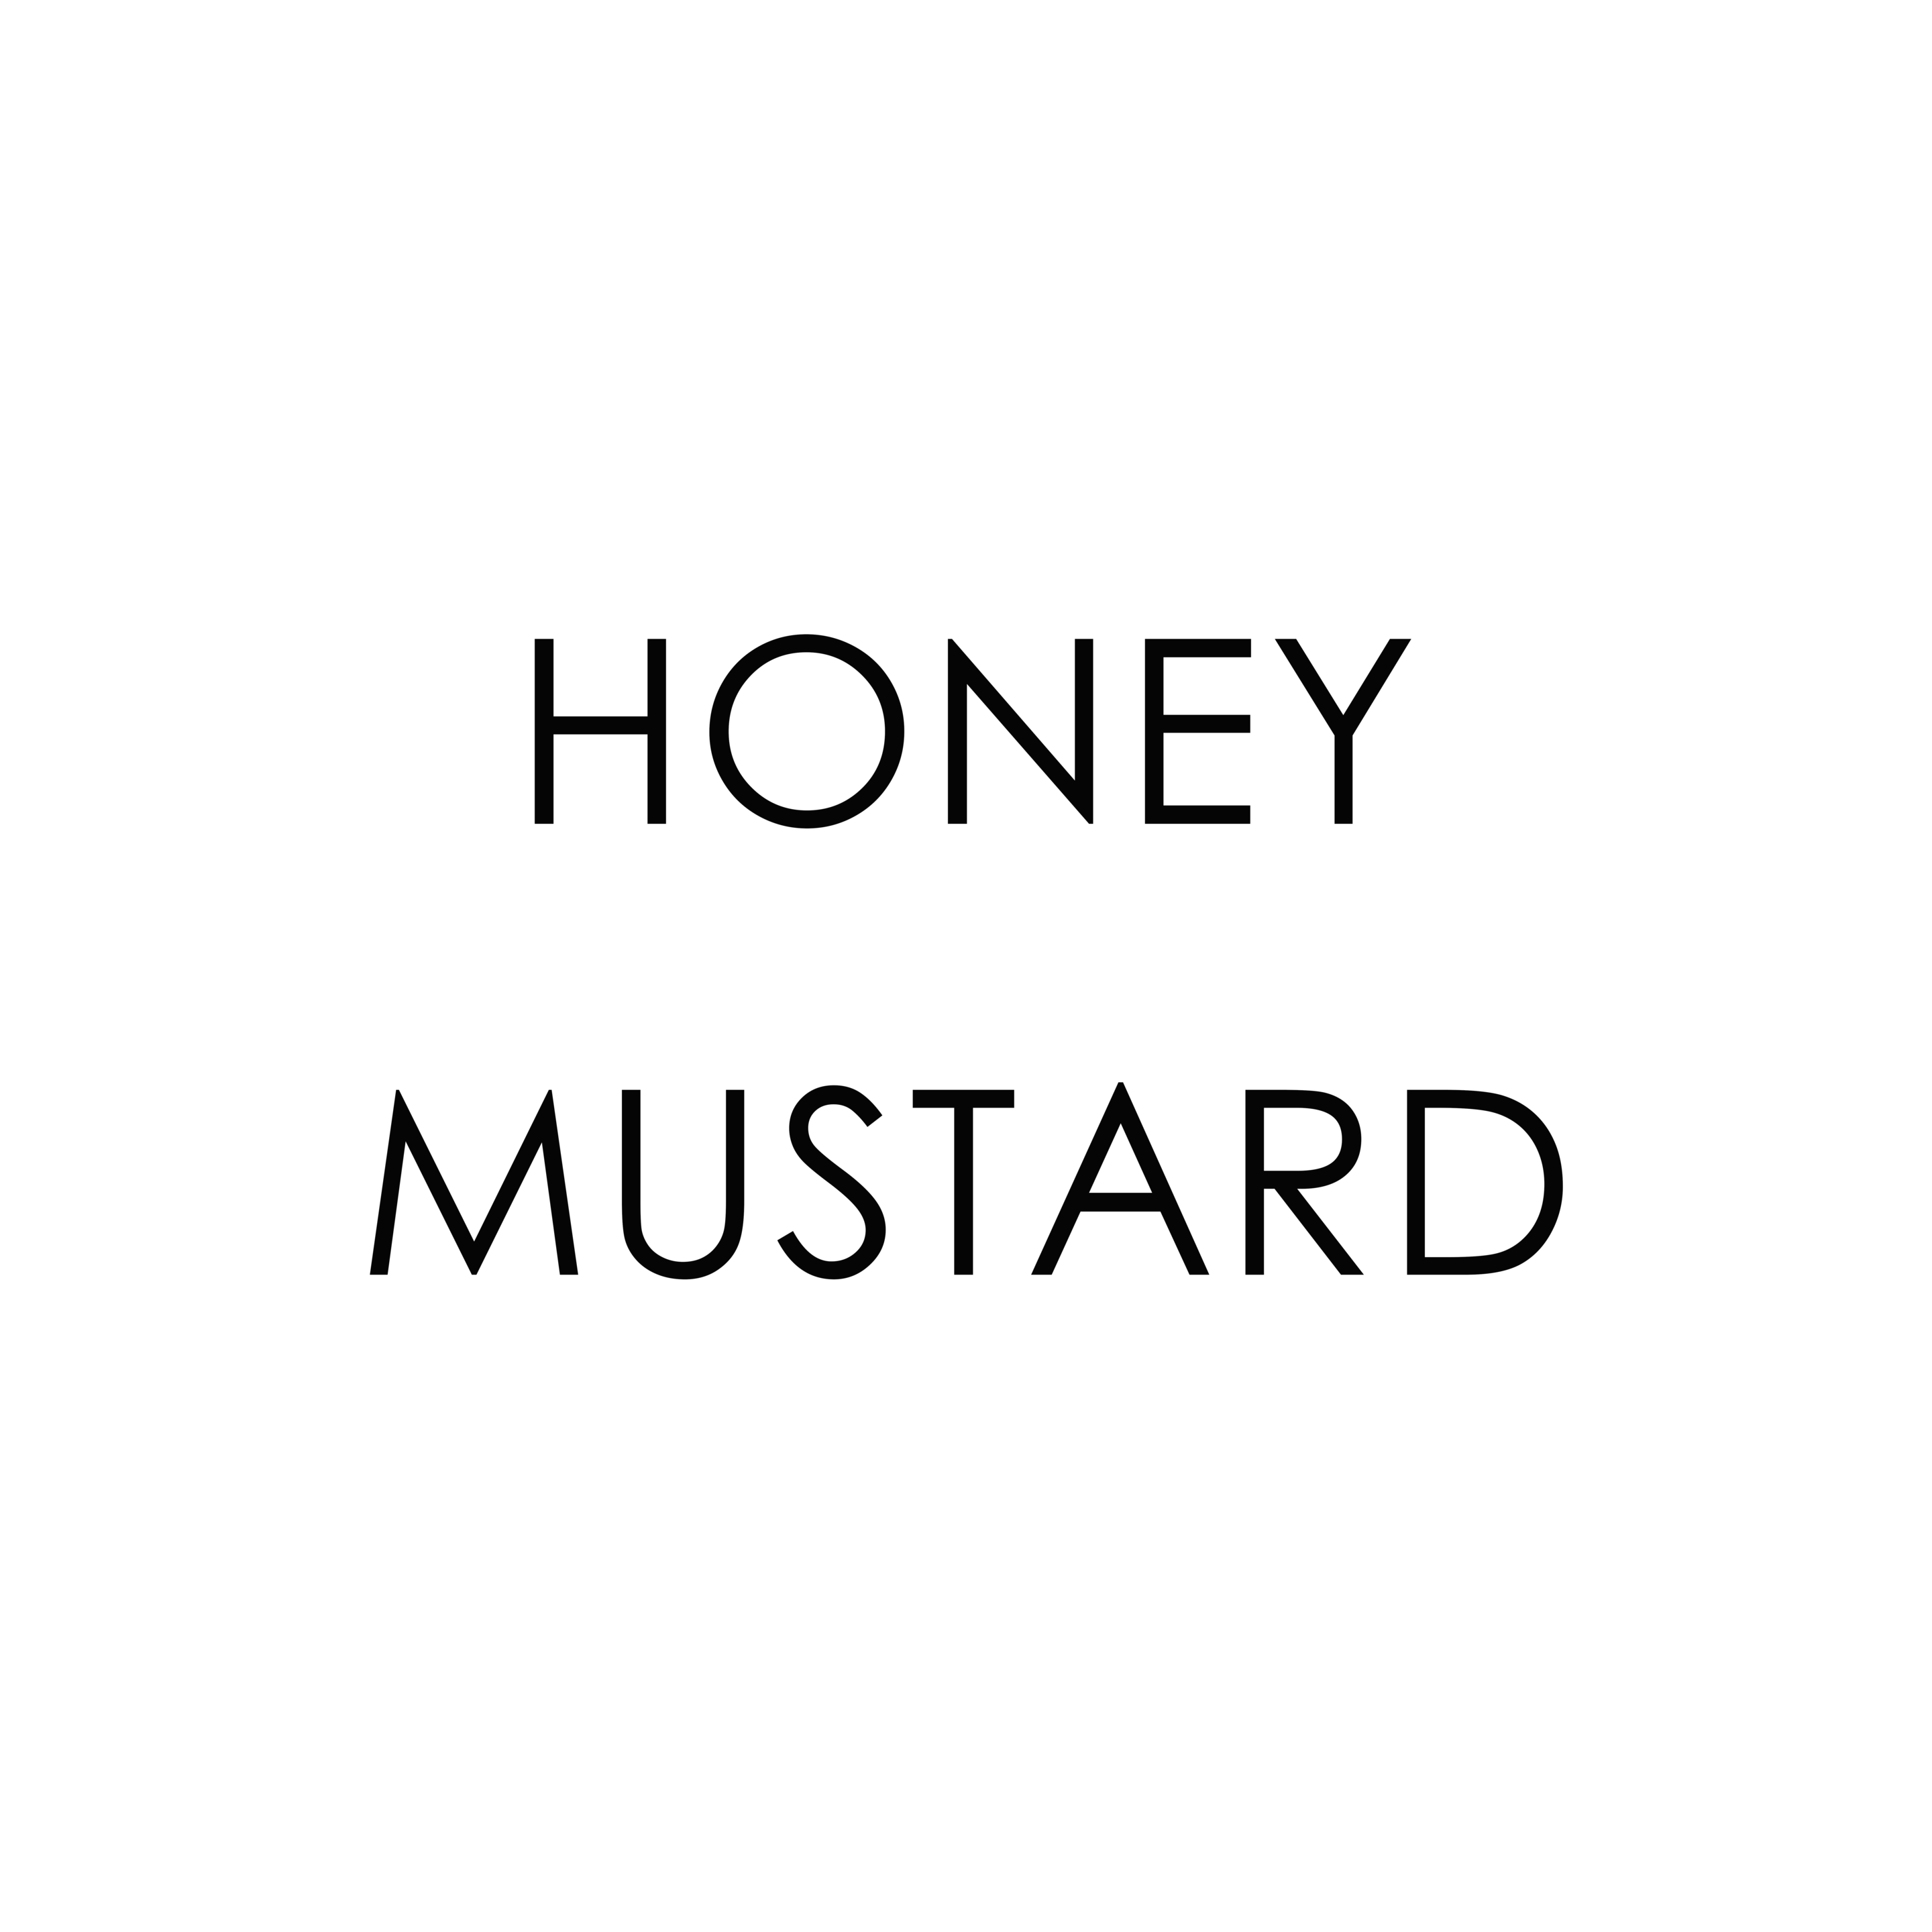 HONEY MUSTARD